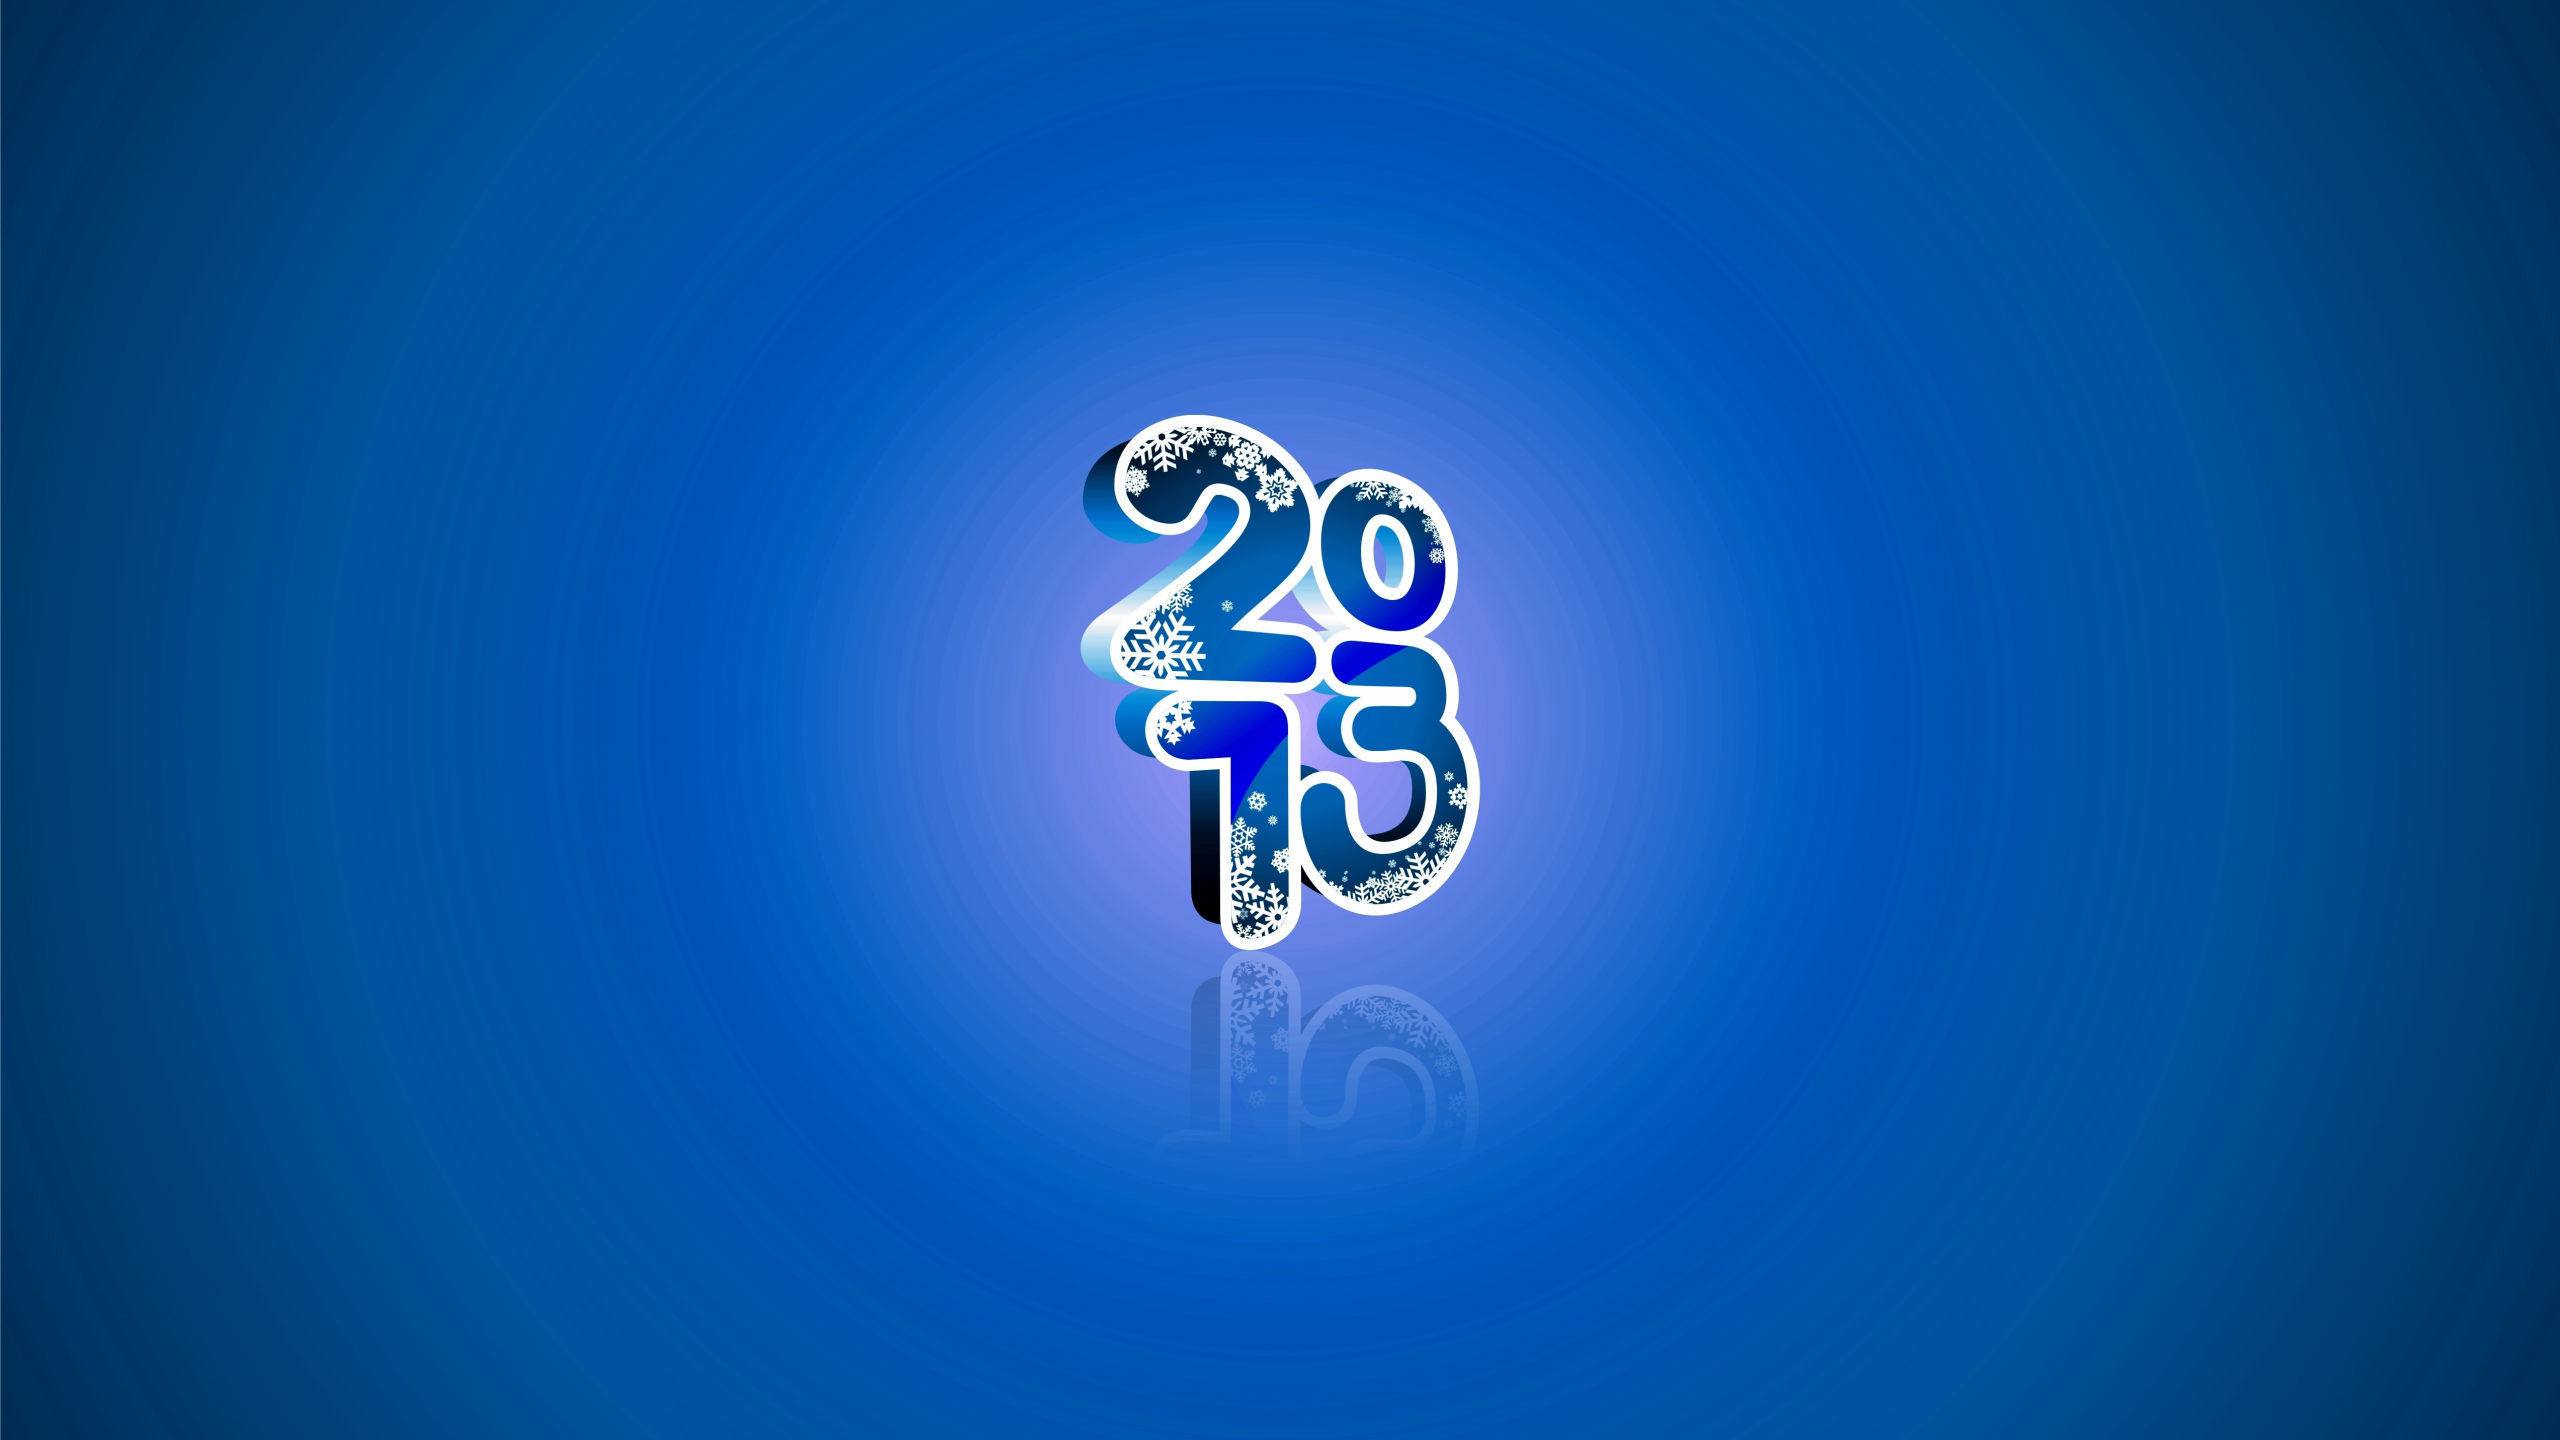 новый год, праздник, Нг, 2013